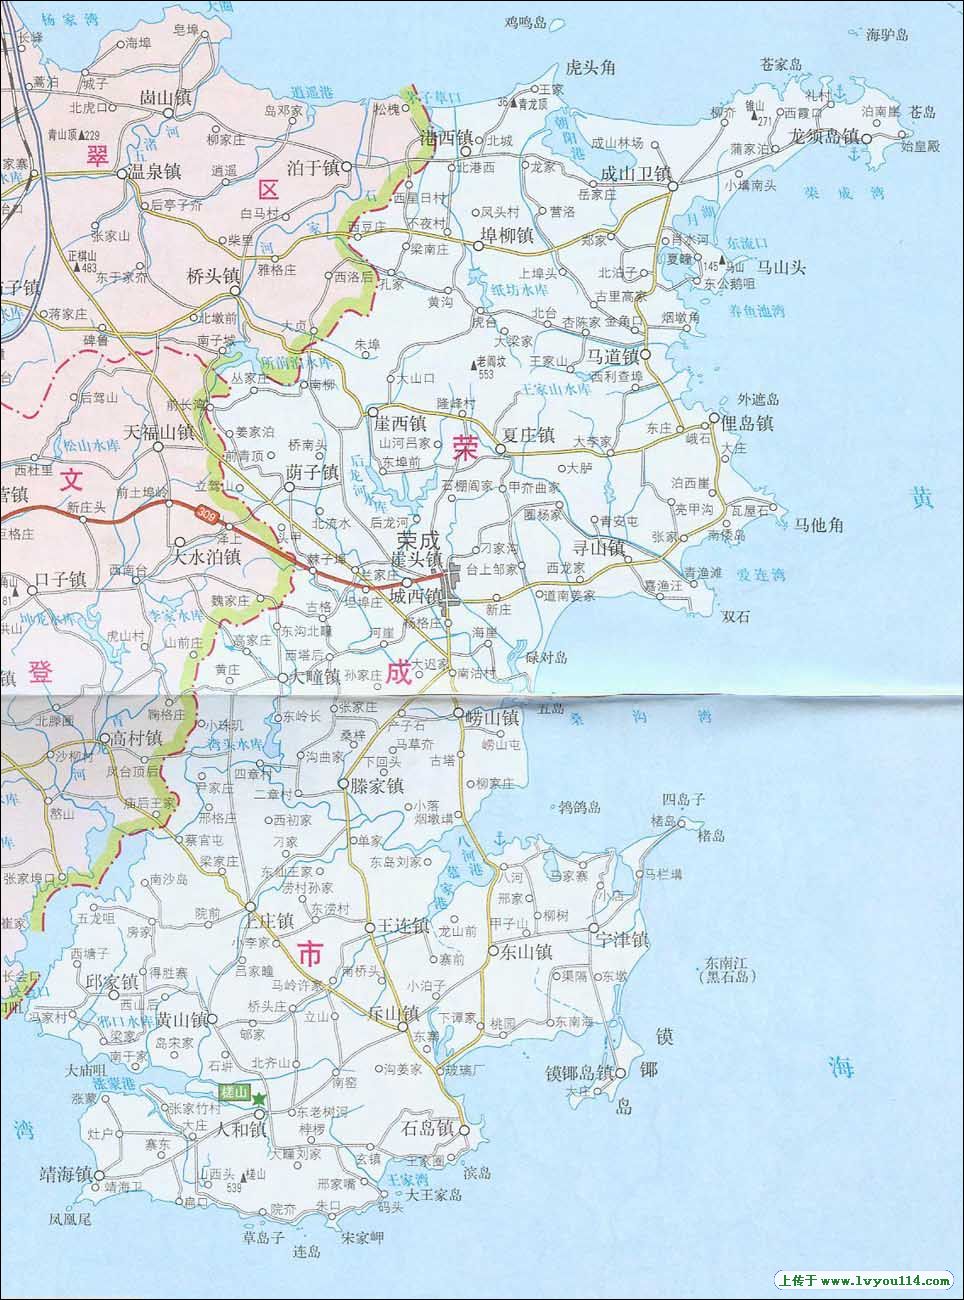 威海市地图高清版 上一篇 下一篇 济南 青岛 泰安 淄博 枣庄.图片